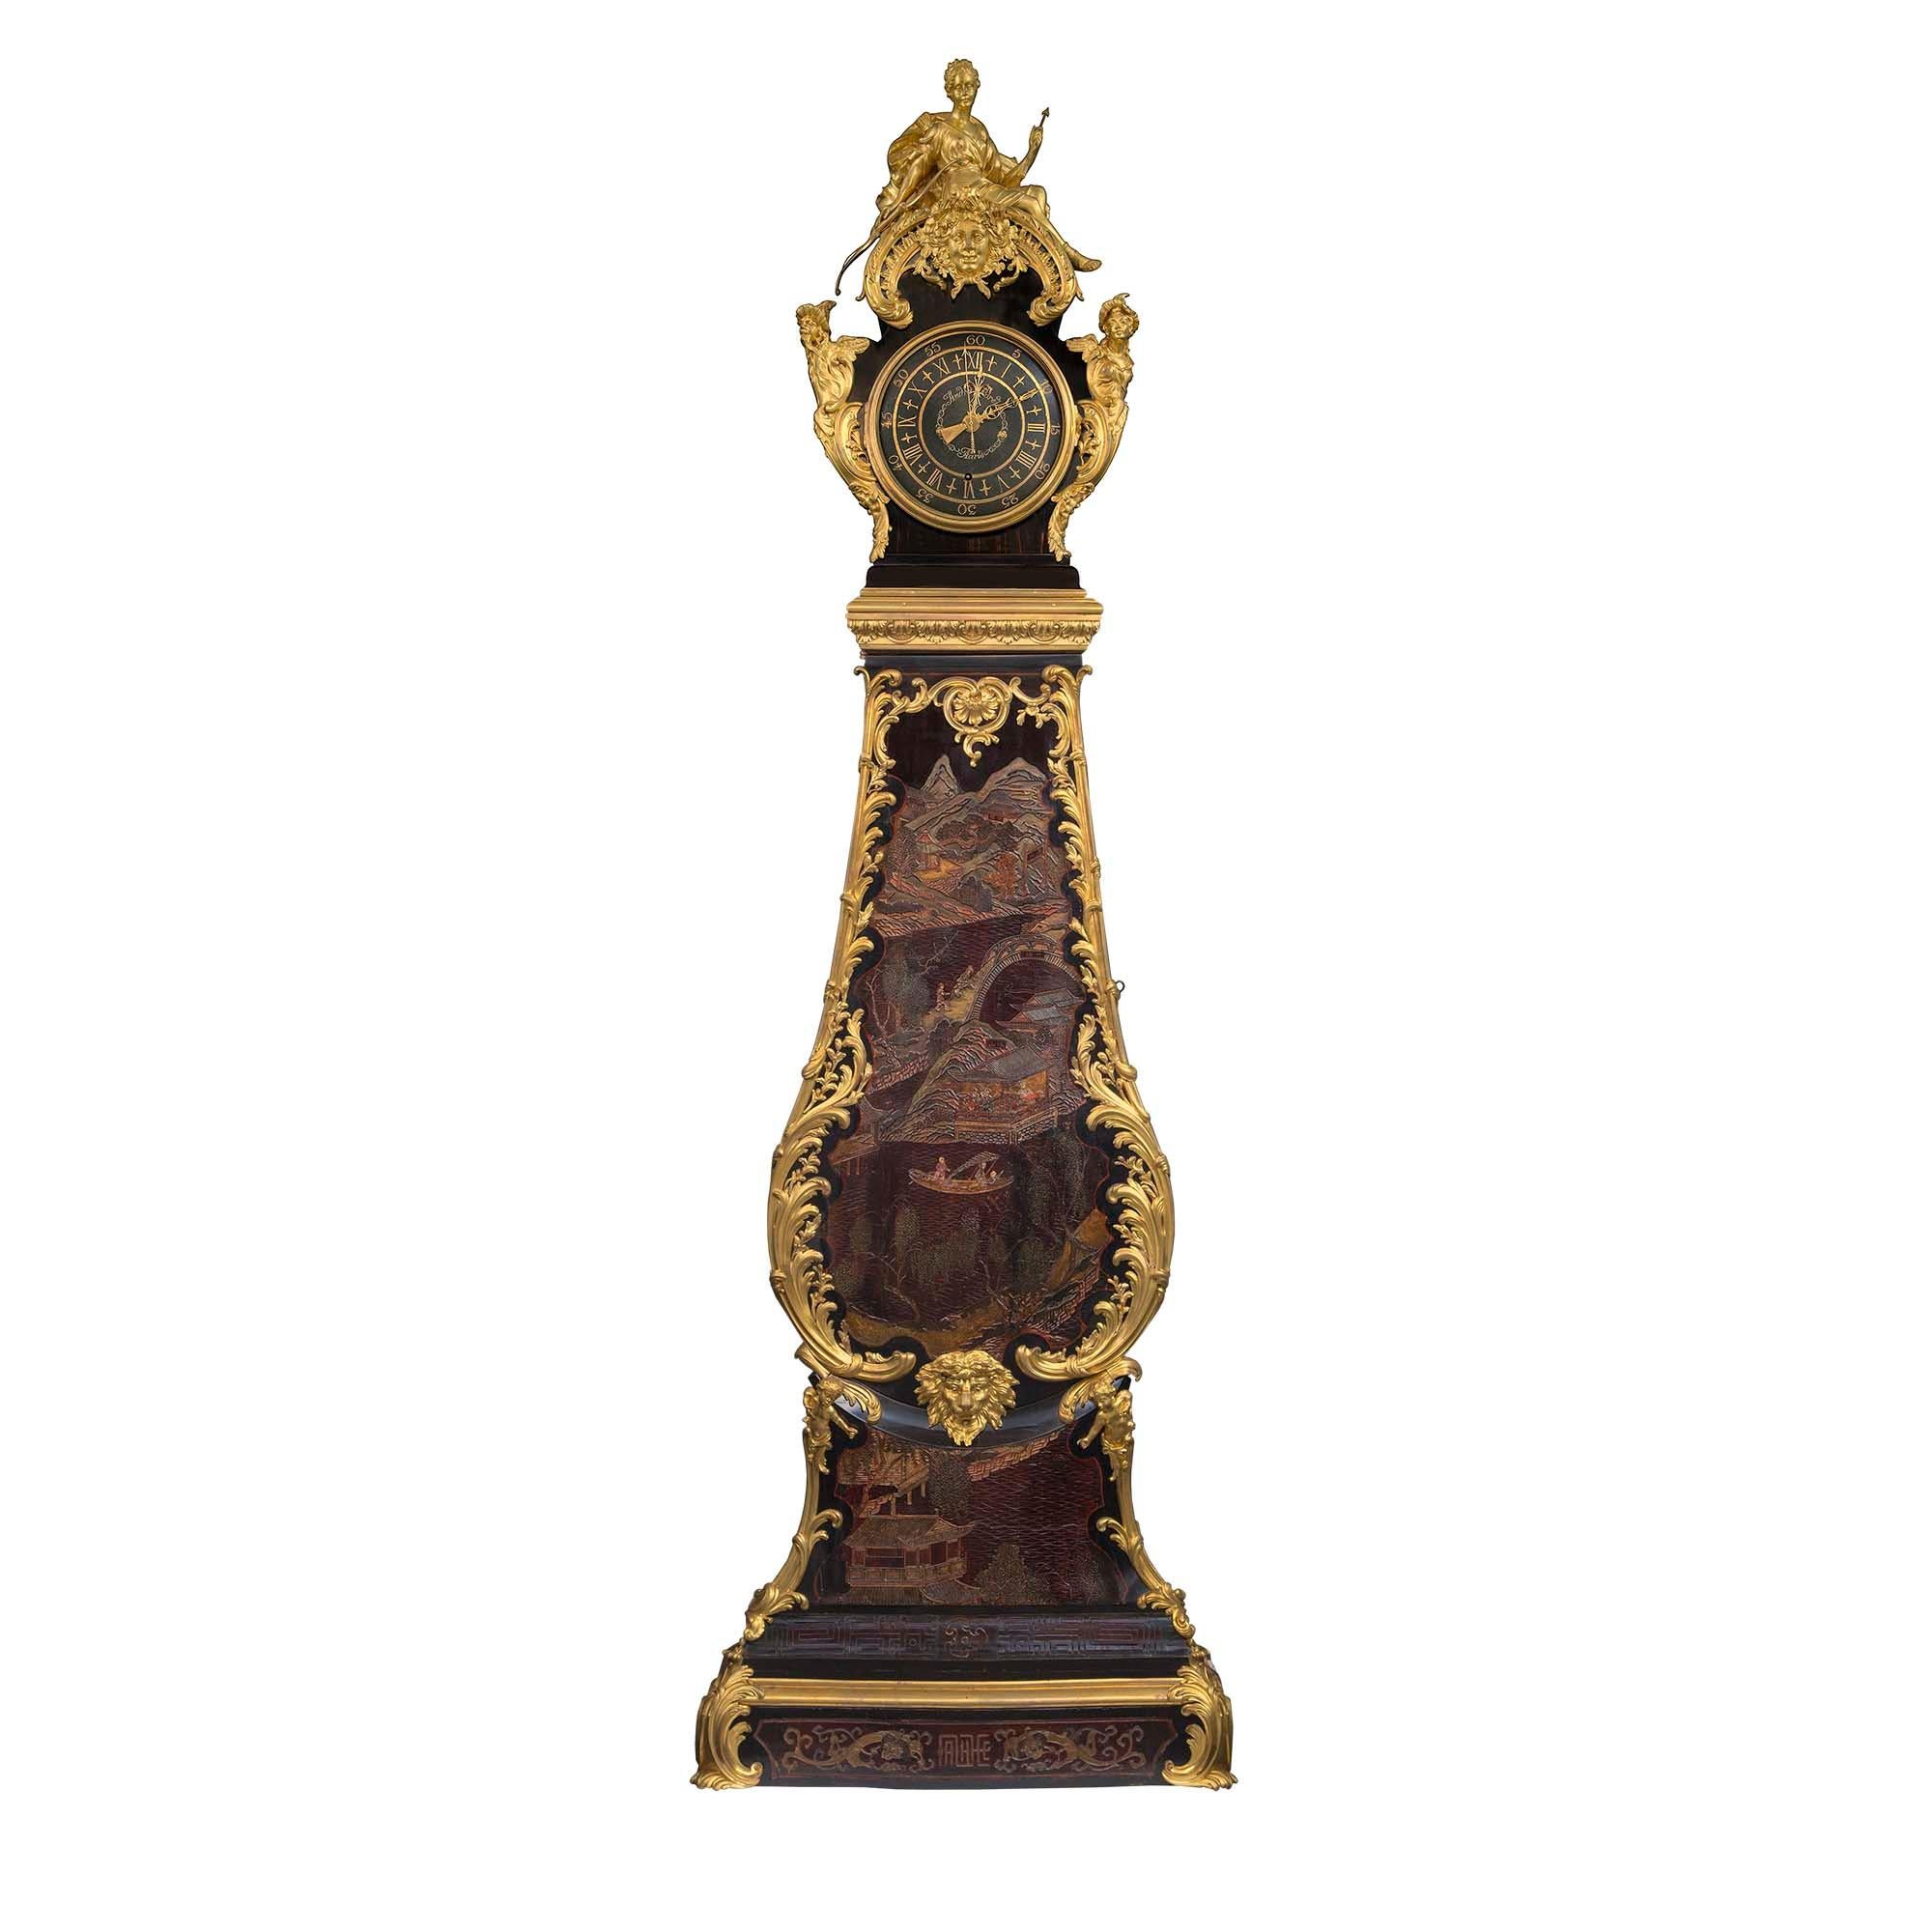 Magnifique horloge grand-père française du XVIIIe siècle en coromandel et bronze doré, par André Furet. Cette horloge unique et de grande qualité est surmontée d'une base rectangulaire avec une façade légèrement bombée et d'impressionnantes montures